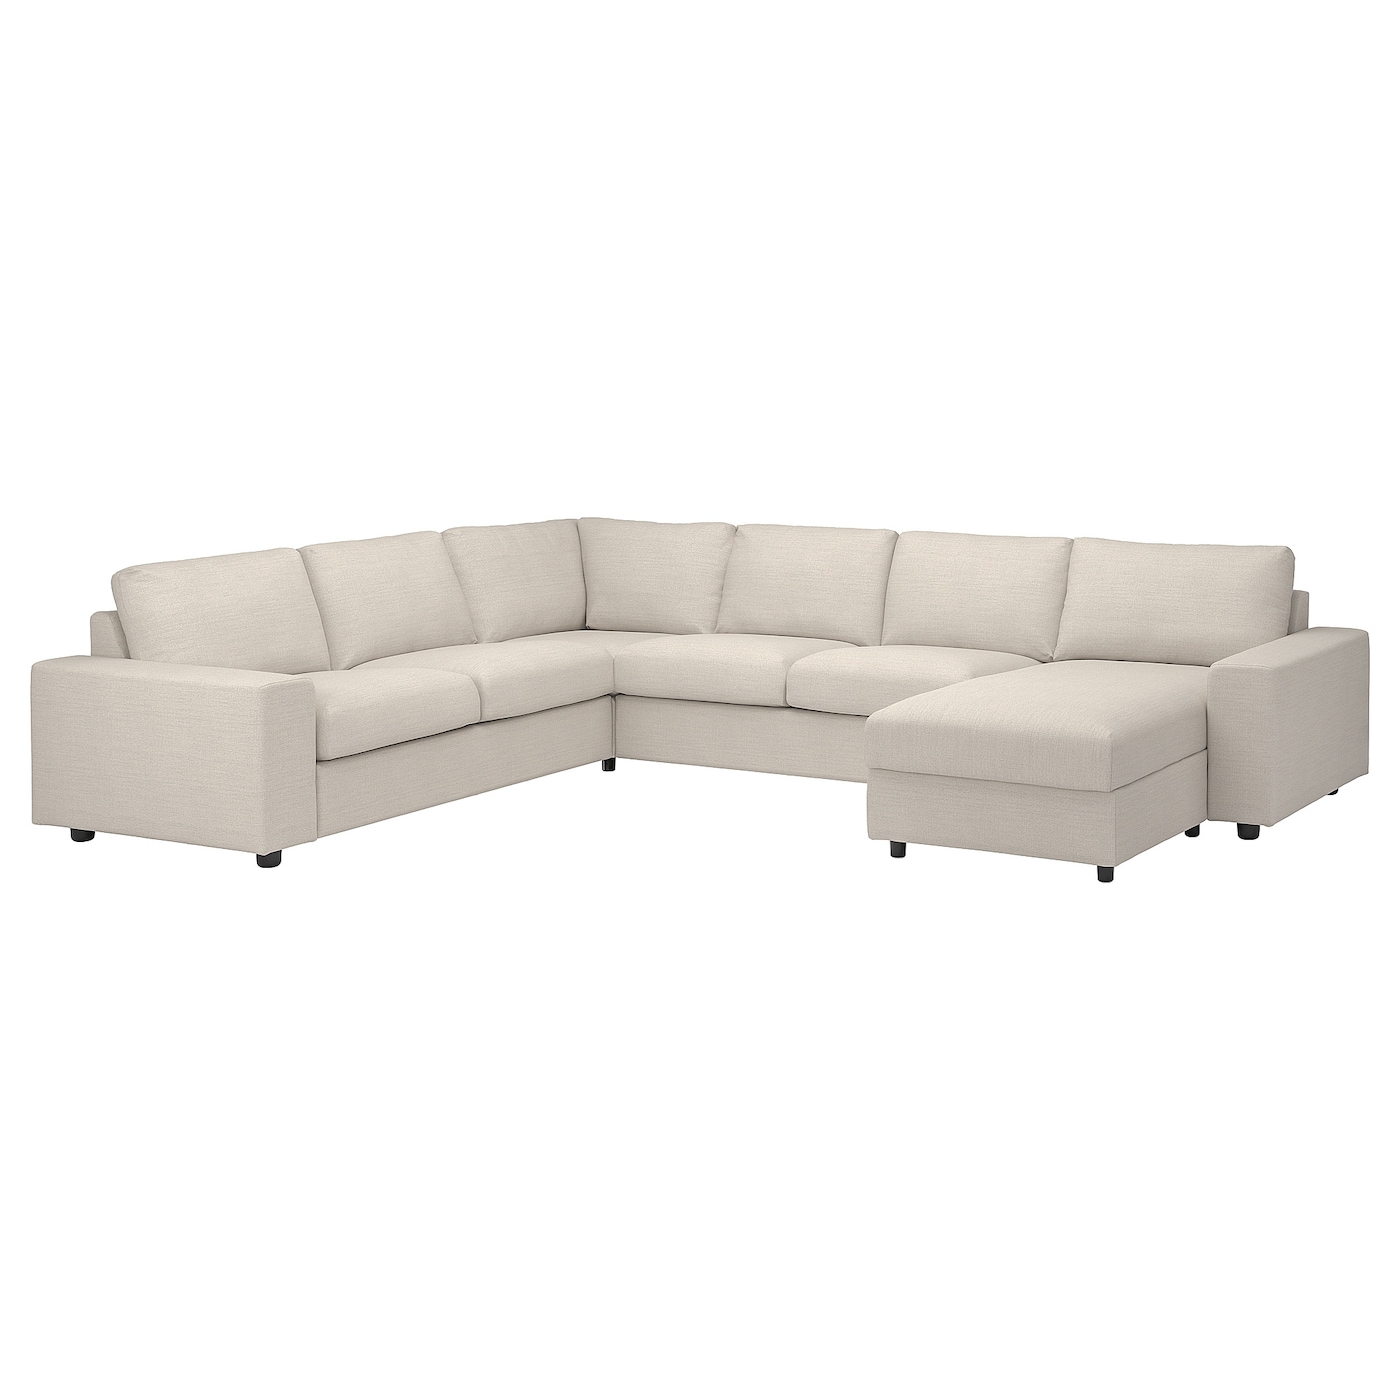 ВИМЛЕ Диван угловой, 5-местный. диван+диван, с широкими подлокотниками/Гуннаред бежевый VIMLE IKEA